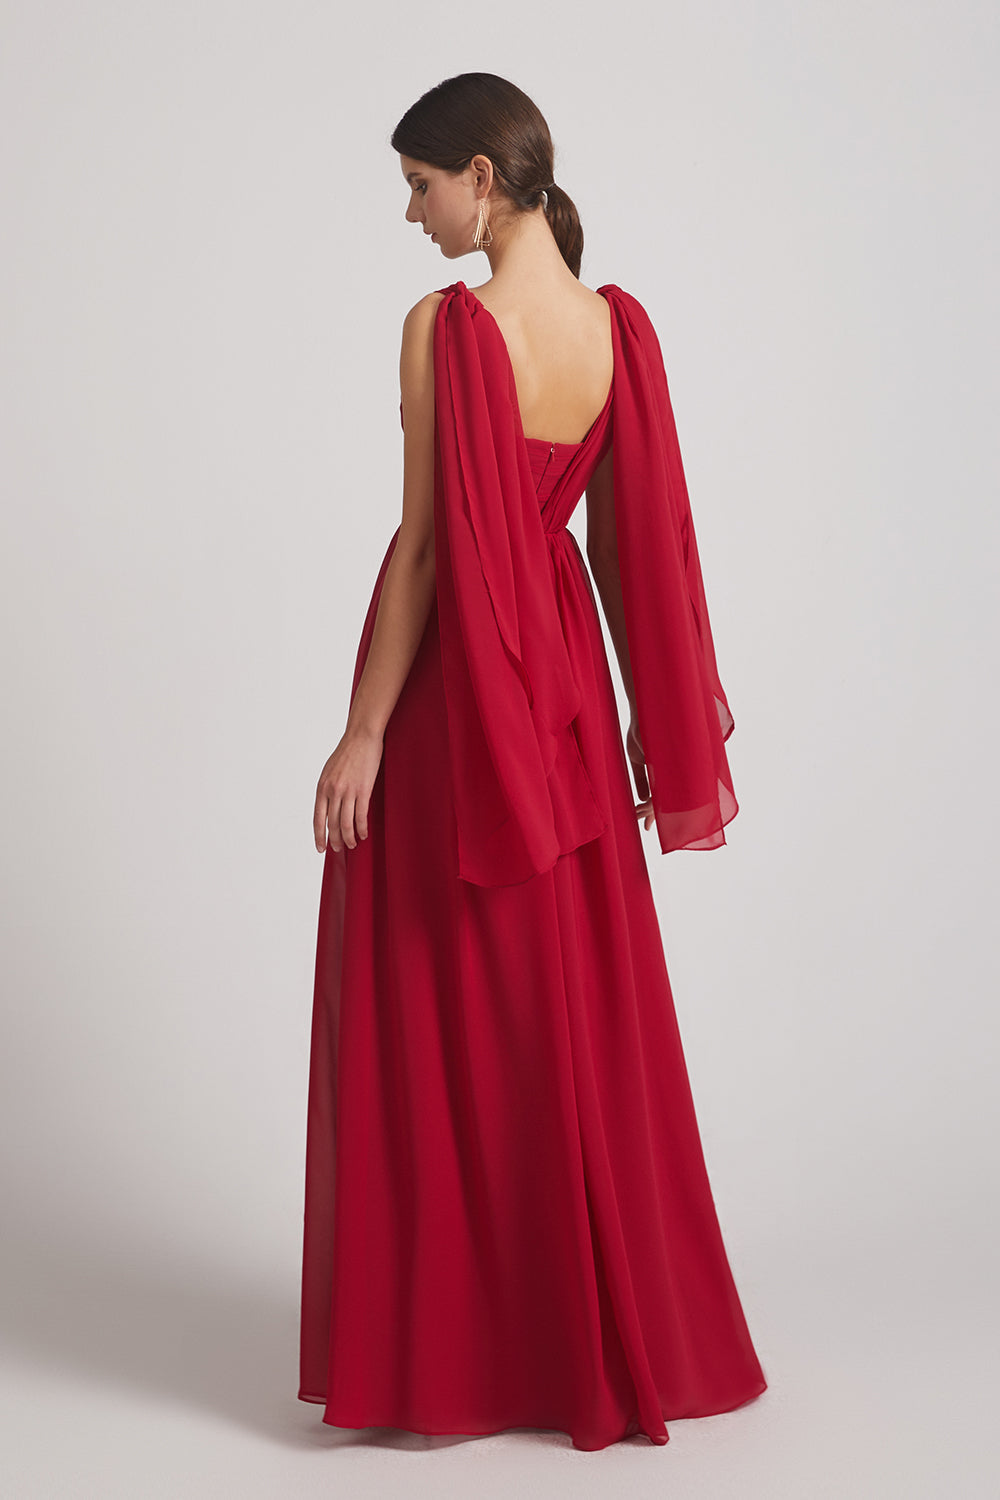 convertible red chiffon ruched bridesmaid dress